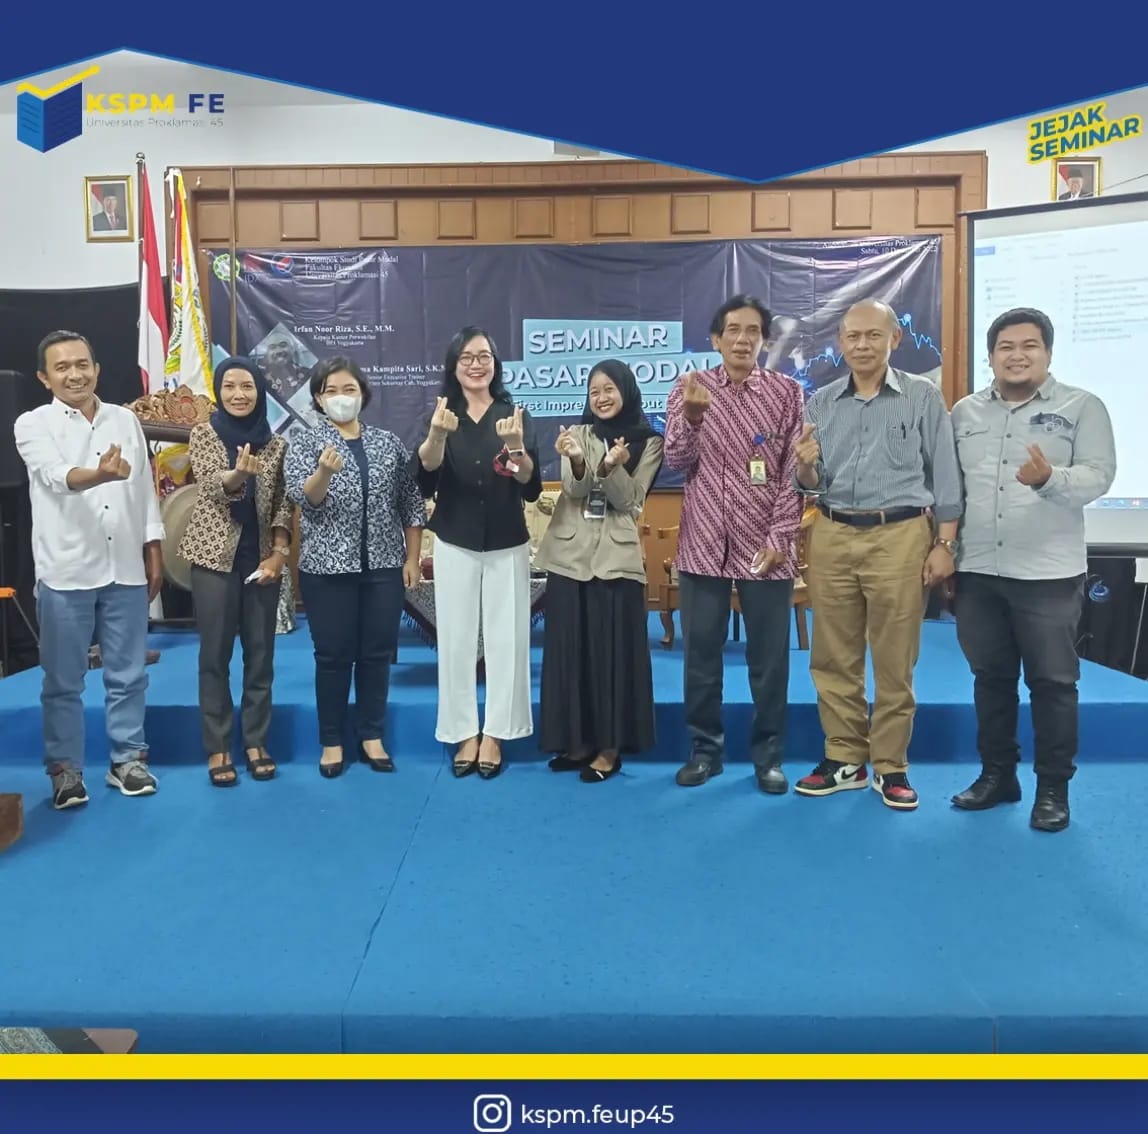 Seminar Penyerahan Surat Keputusan Kepada pengurus KSPM FE UP dan Kerjasama Dengan Bursa Efek Indonesia